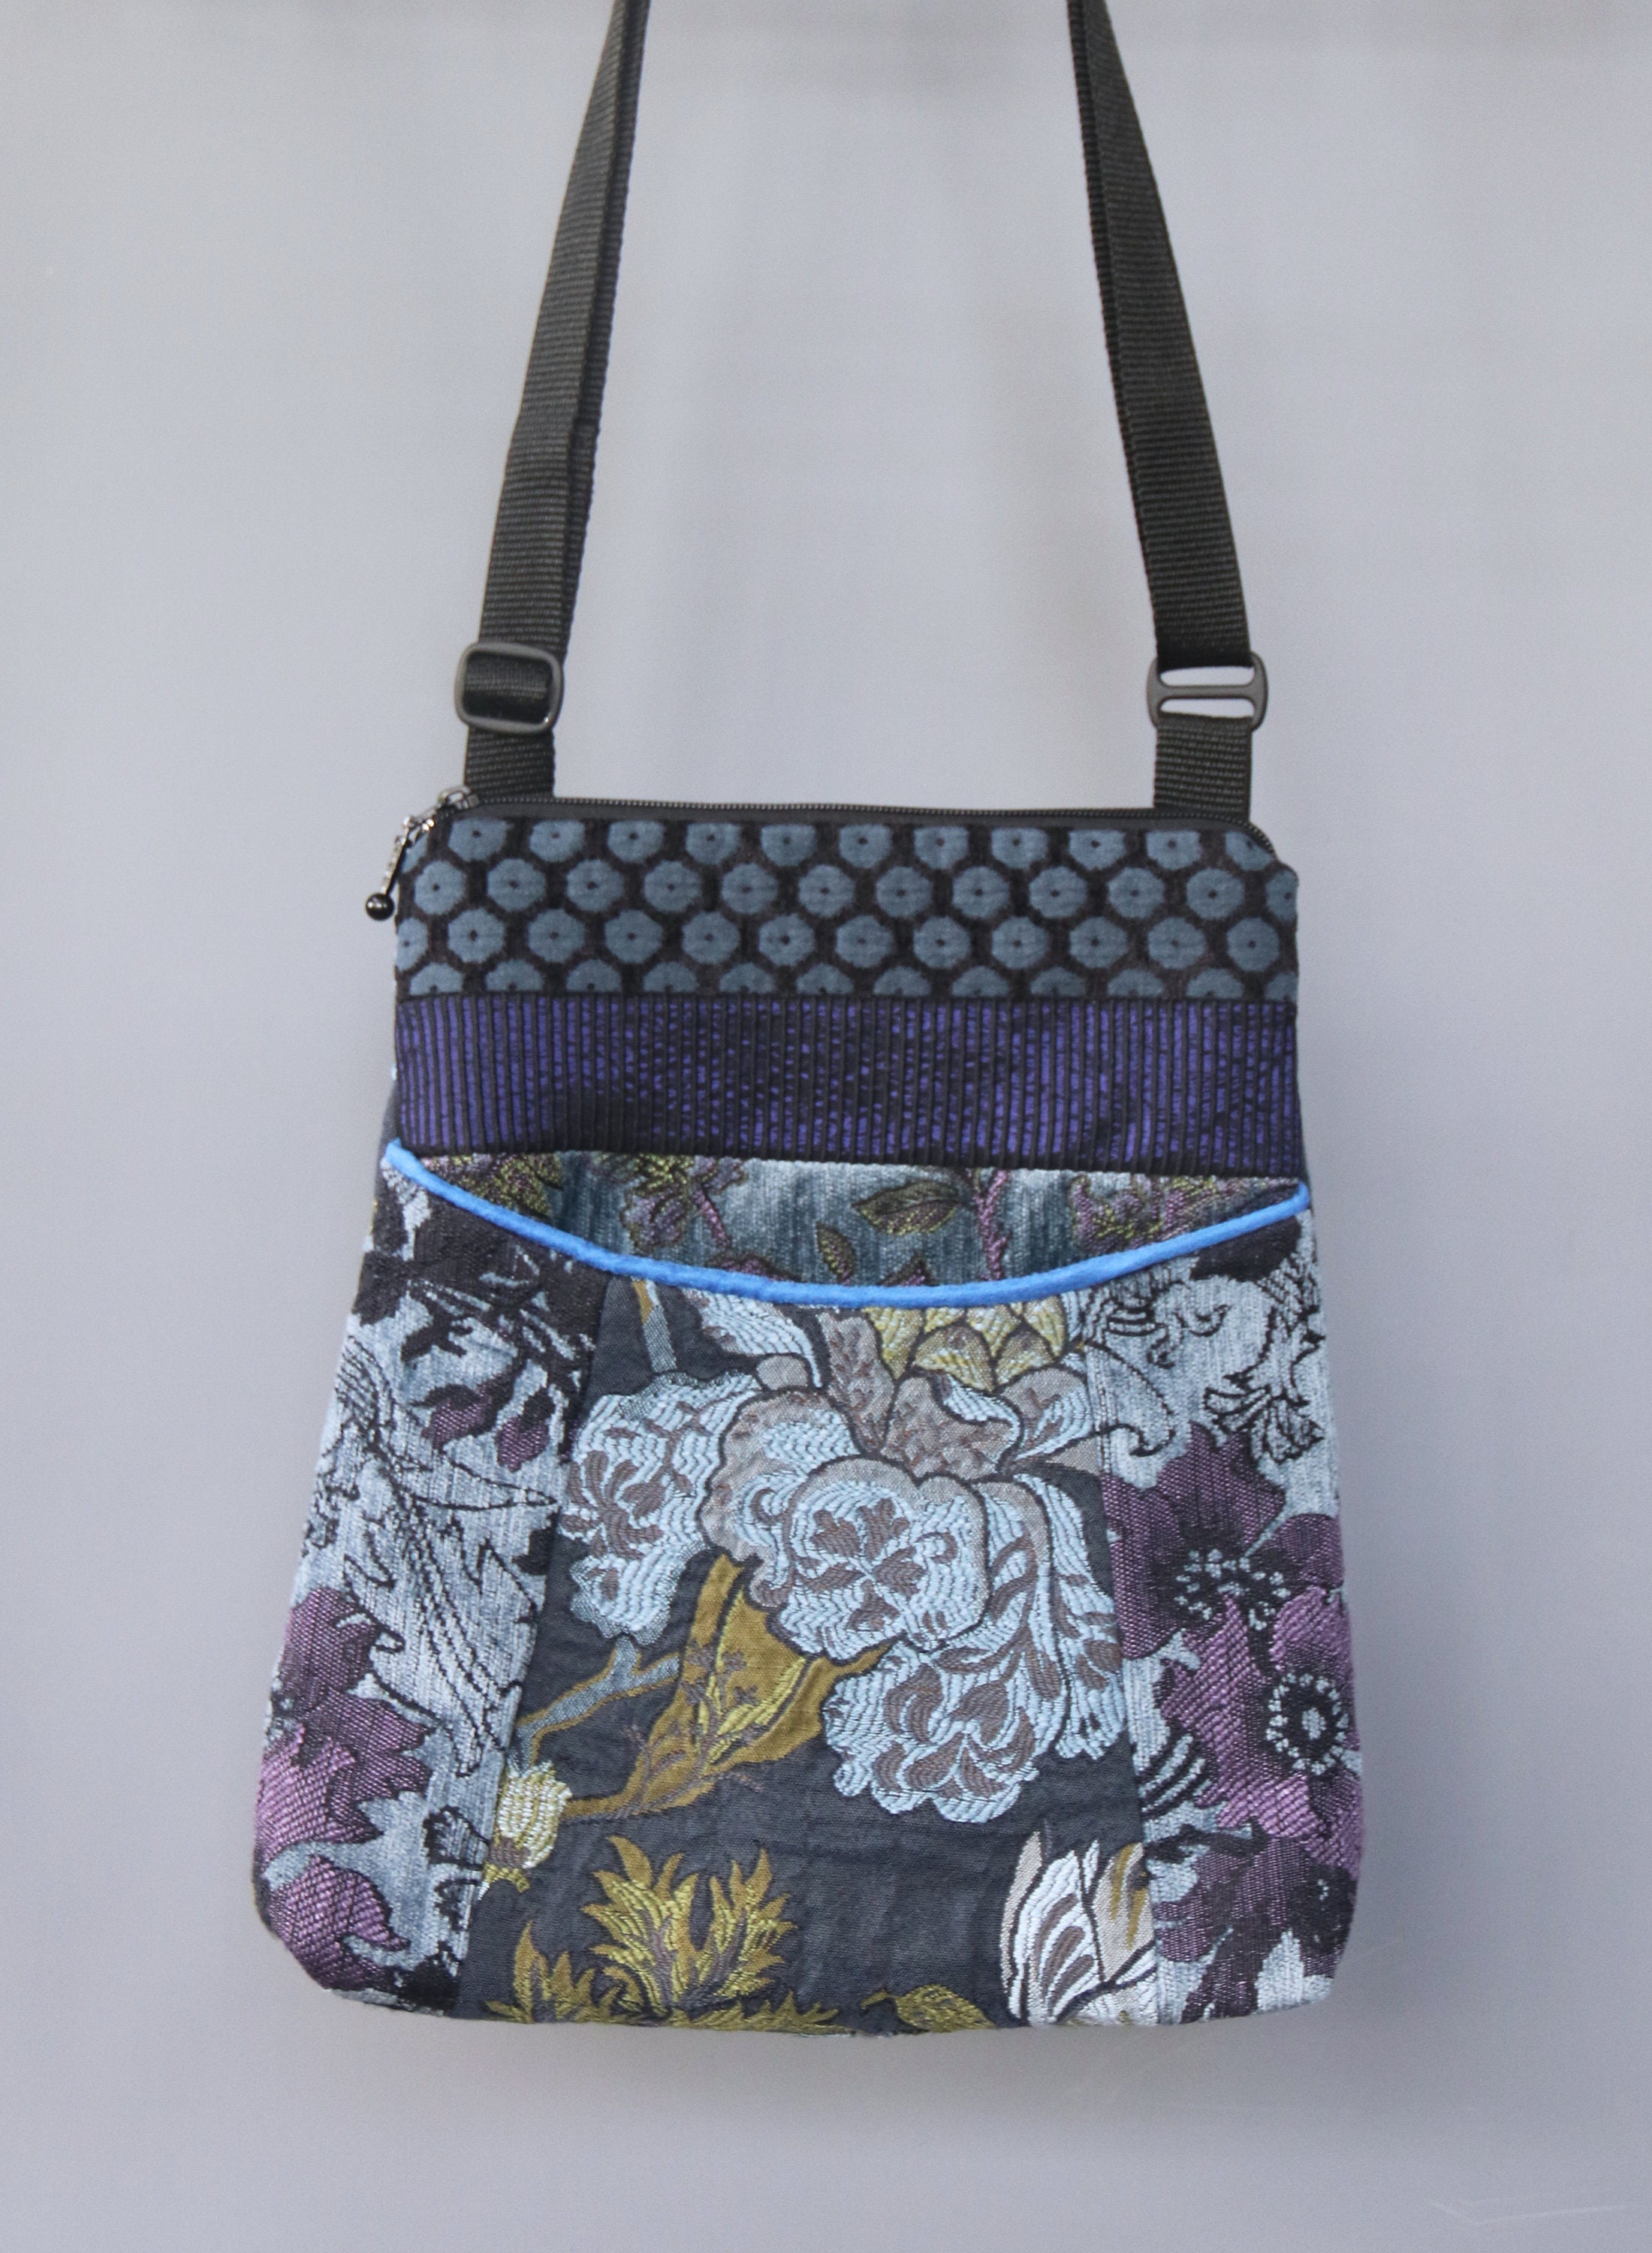 Mineral Adjustable Bag in Blue and Lavender Floral Jacquard | Etsy